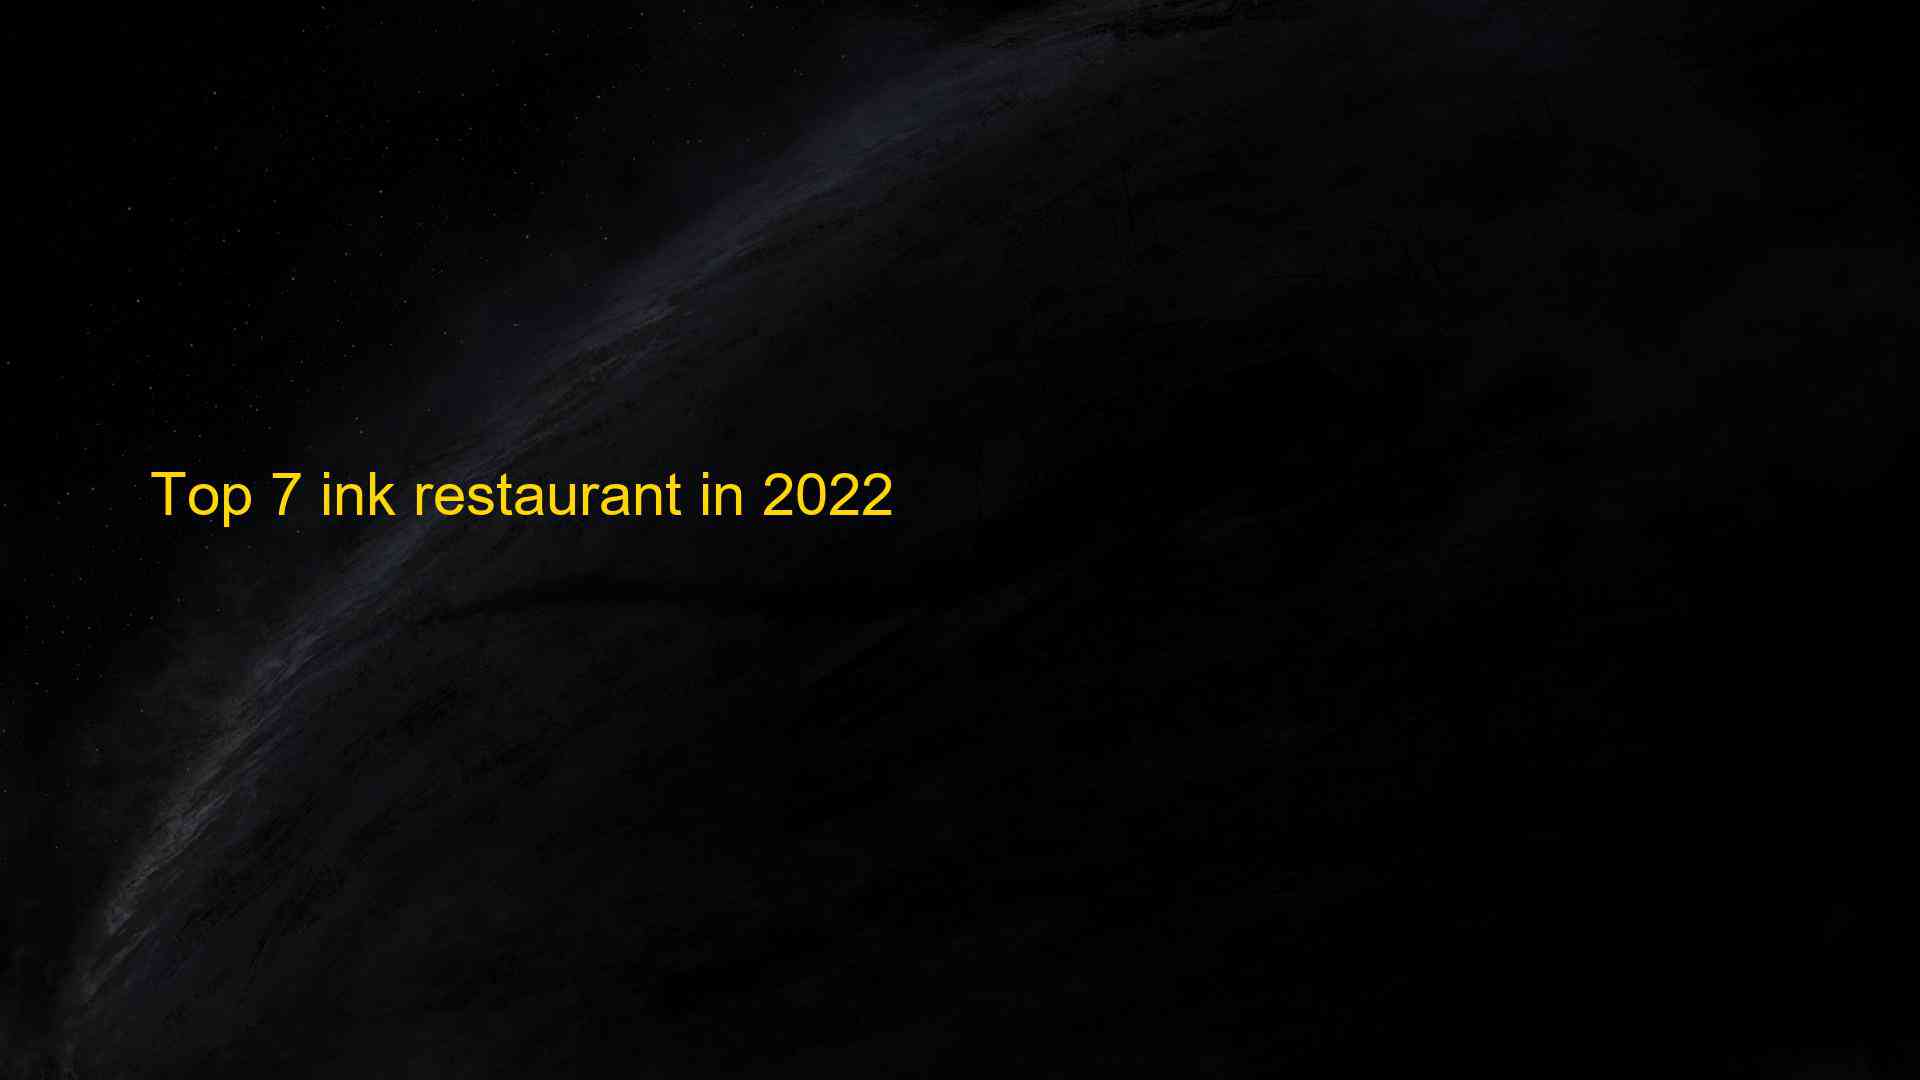 Top 7 ink restaurant in 2022 1663505090